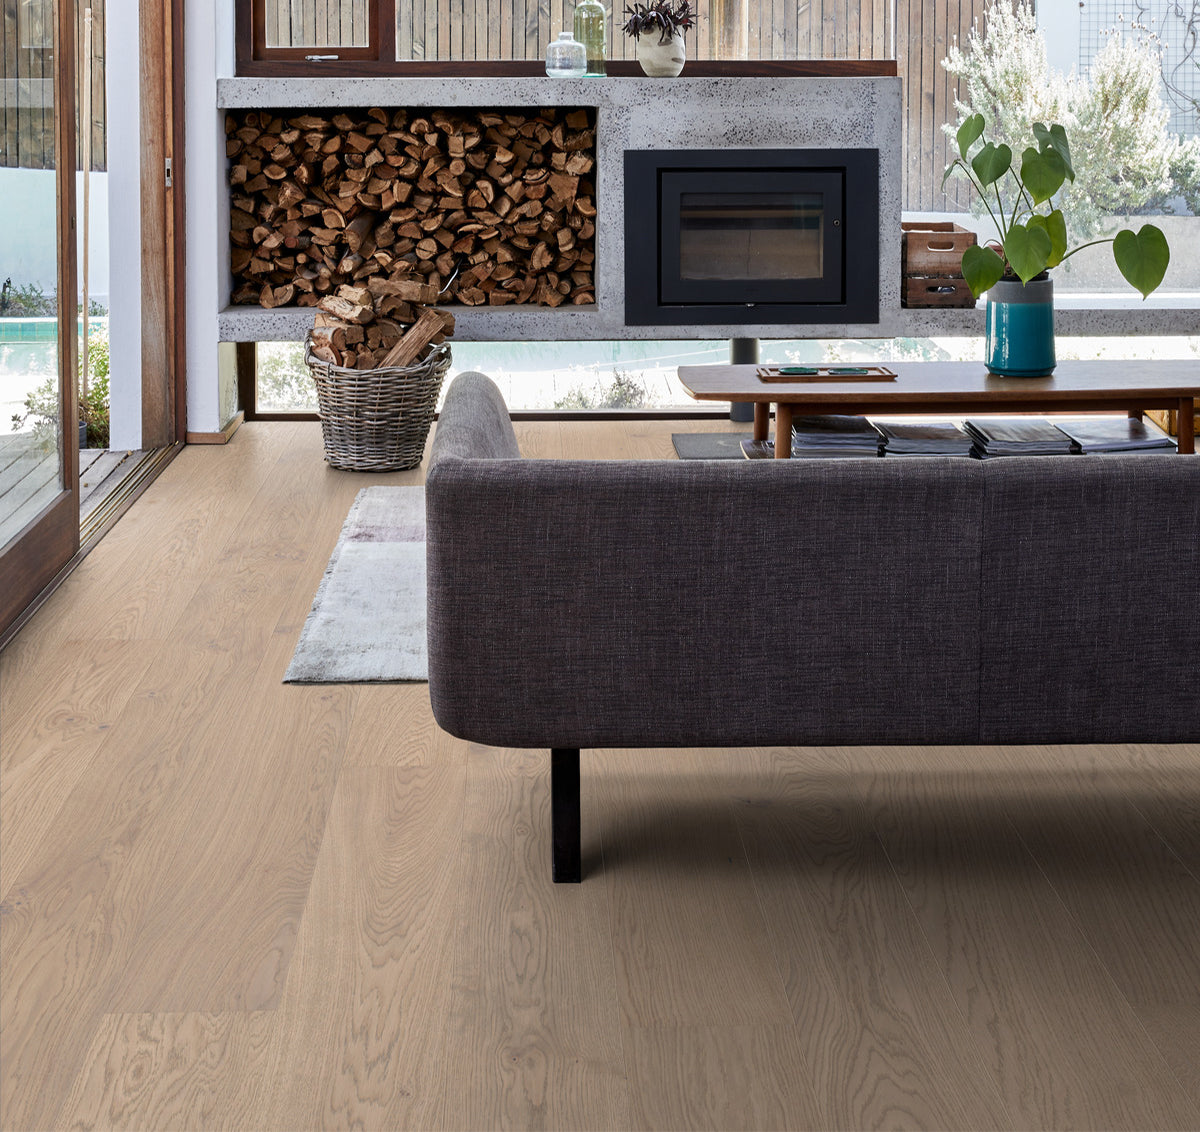 wide plank full length stuga matte hardwood flooring, ingrid for whole home remodels